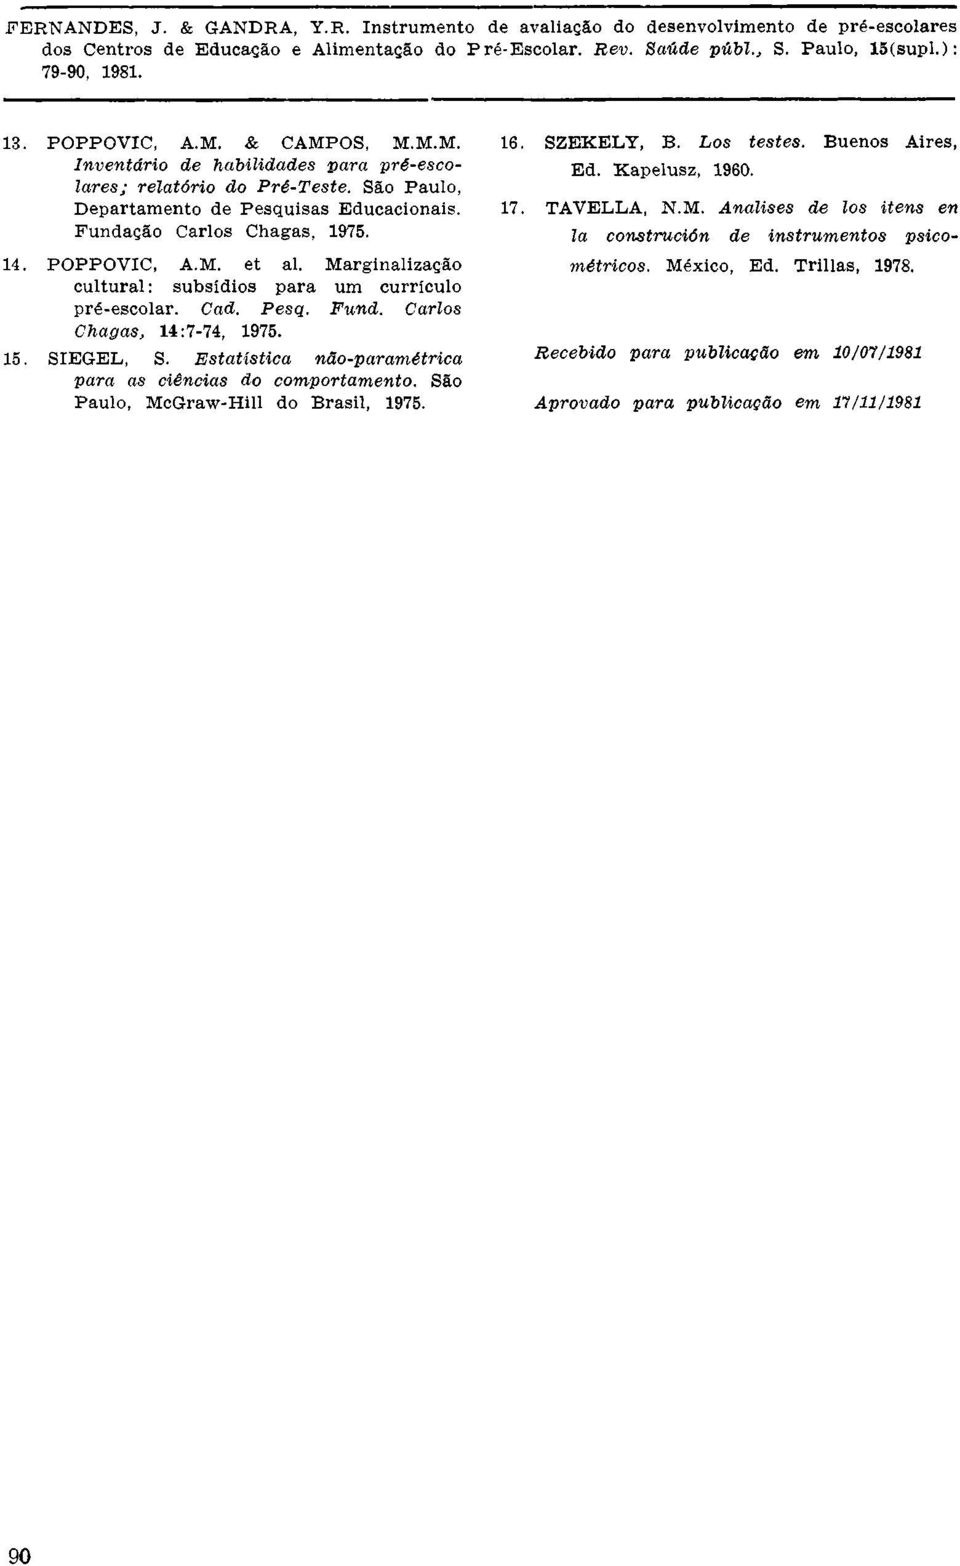 SIEGEL, S. Estatística não-paramétrica para as ciências do comportamento. São Paulo, McGraw-Hill do Brasil, 1975. 16. SZEKELY, B. Los testes. Buenos Aires, Ed. Kapelusz, 1960.